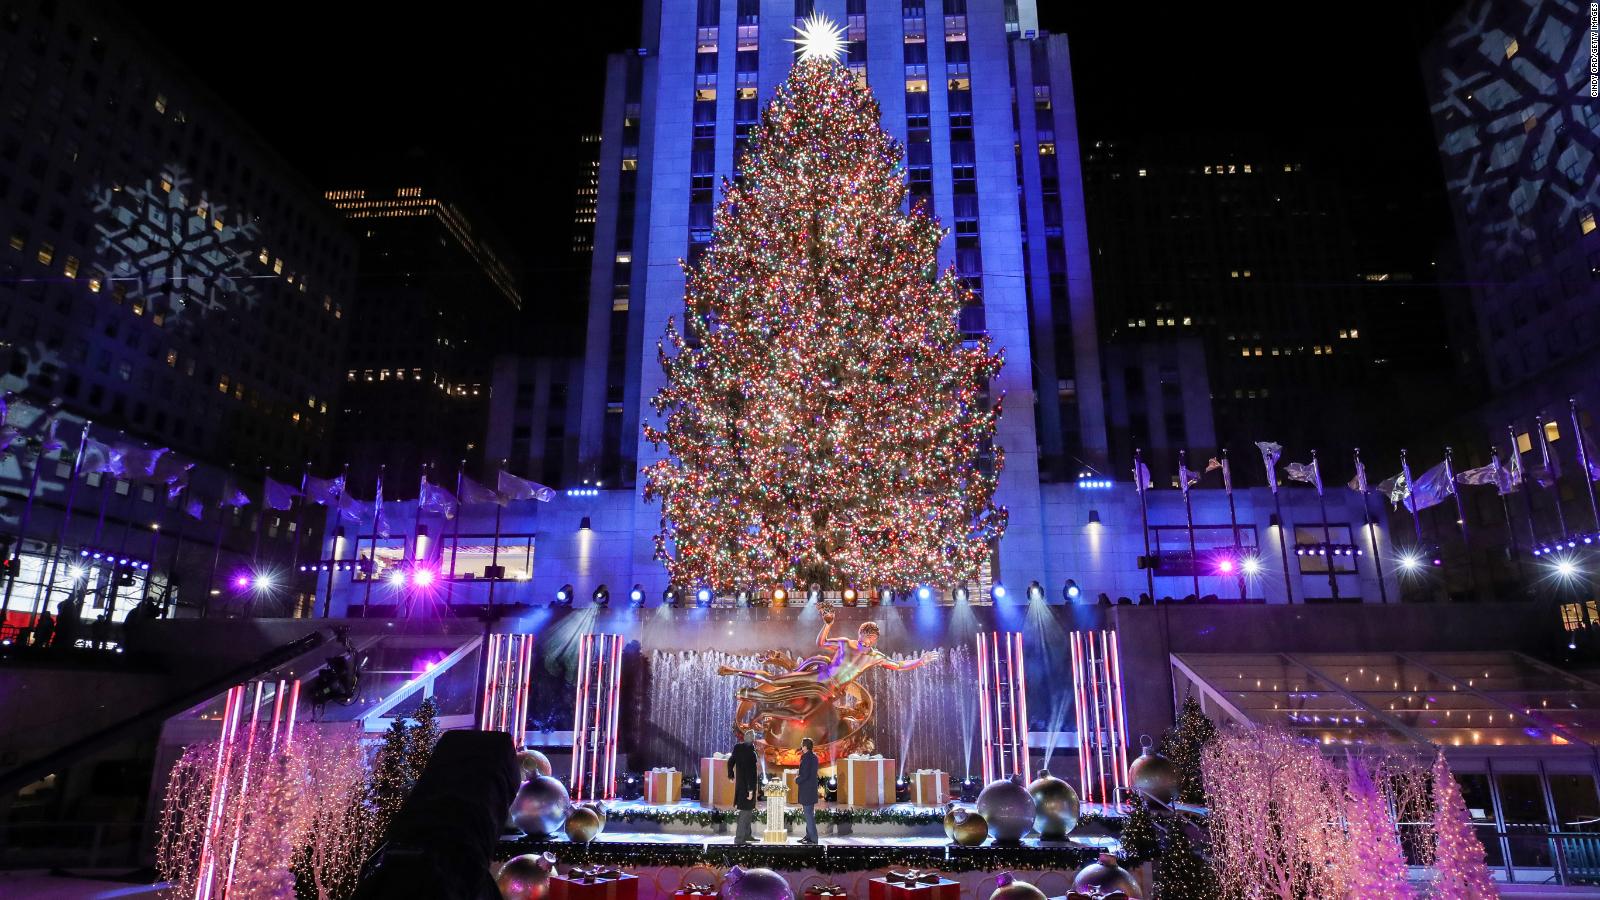 Rockefeller Christmas Tree Lighting Set For Wednesday Evening